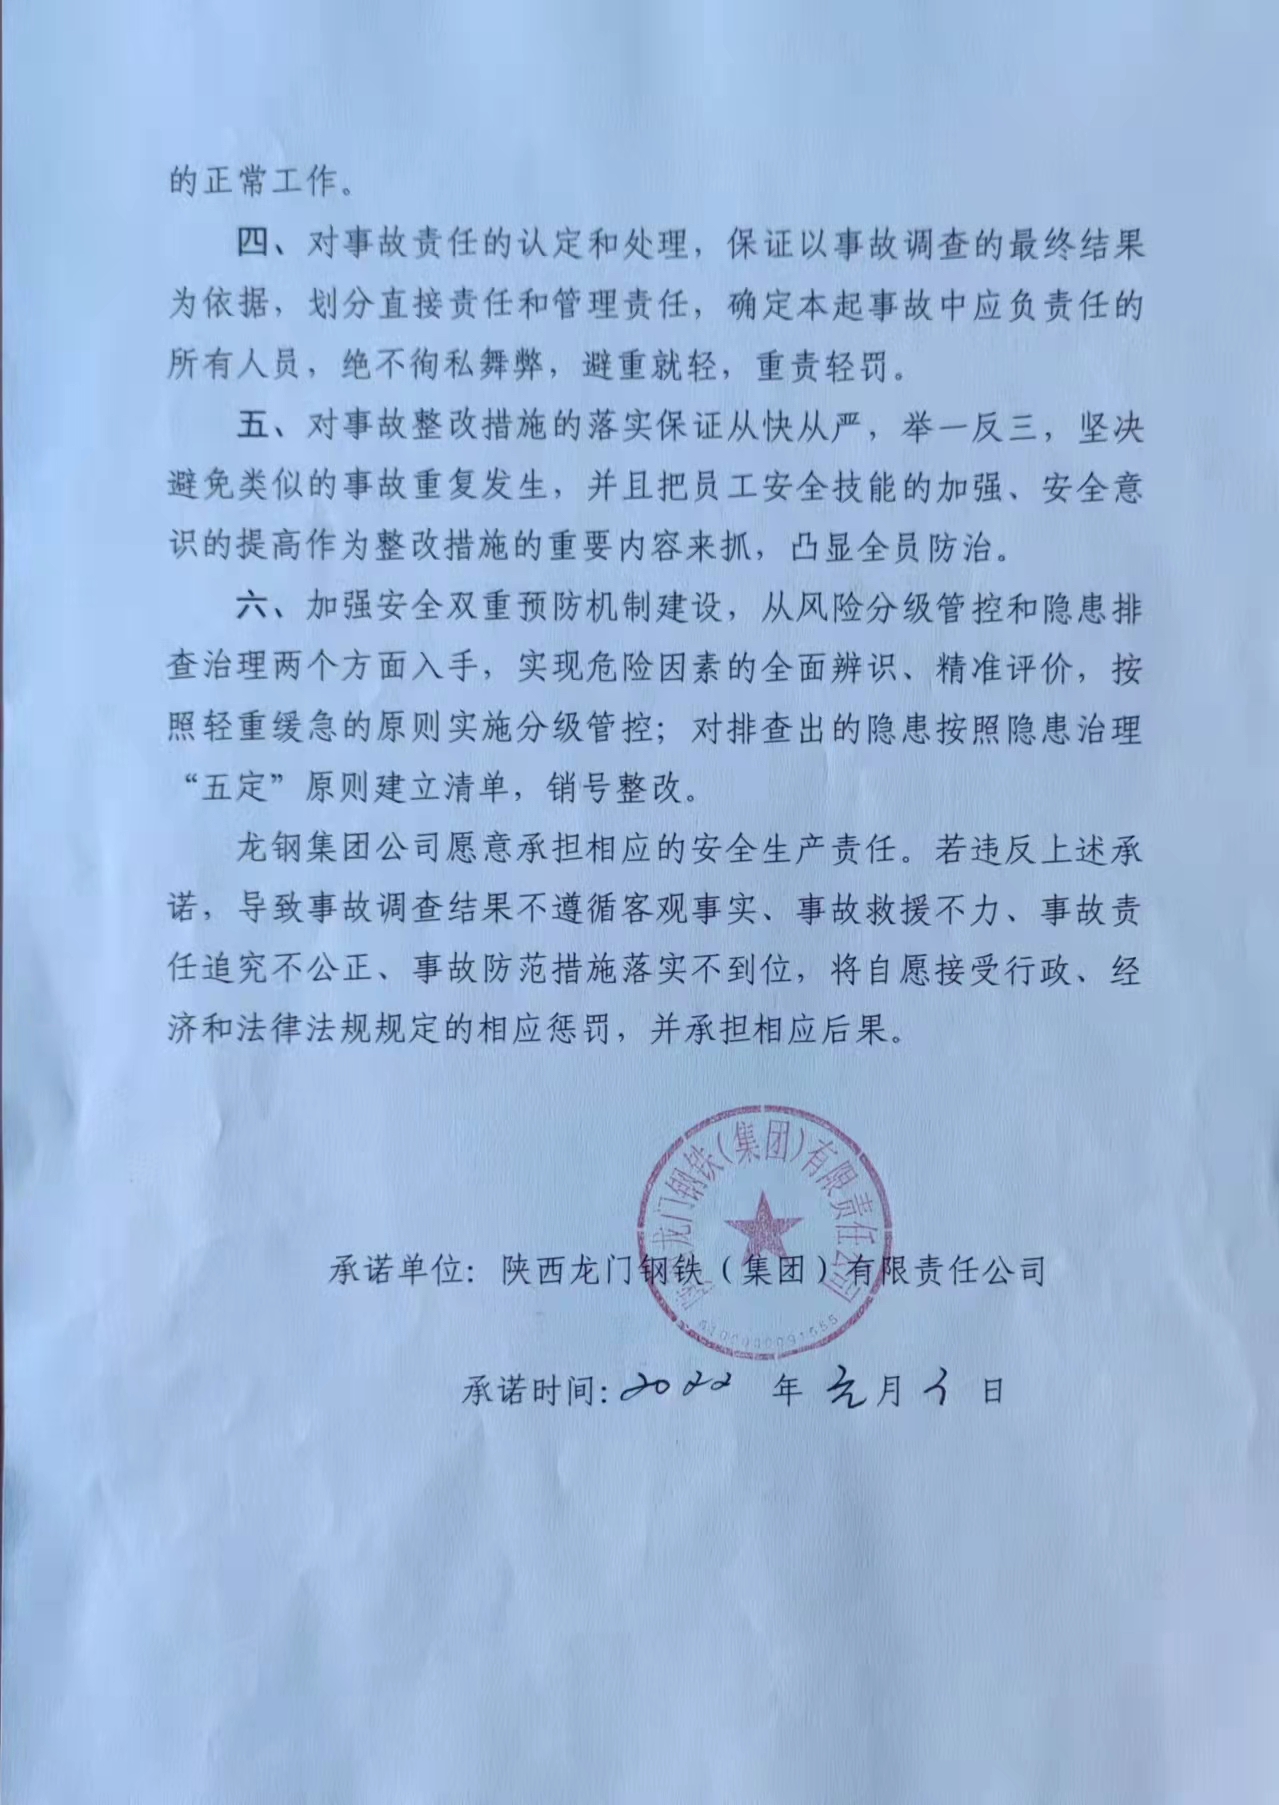 陕西龙门钢铁（集团）有限责任公司安全生产事故处置承诺书